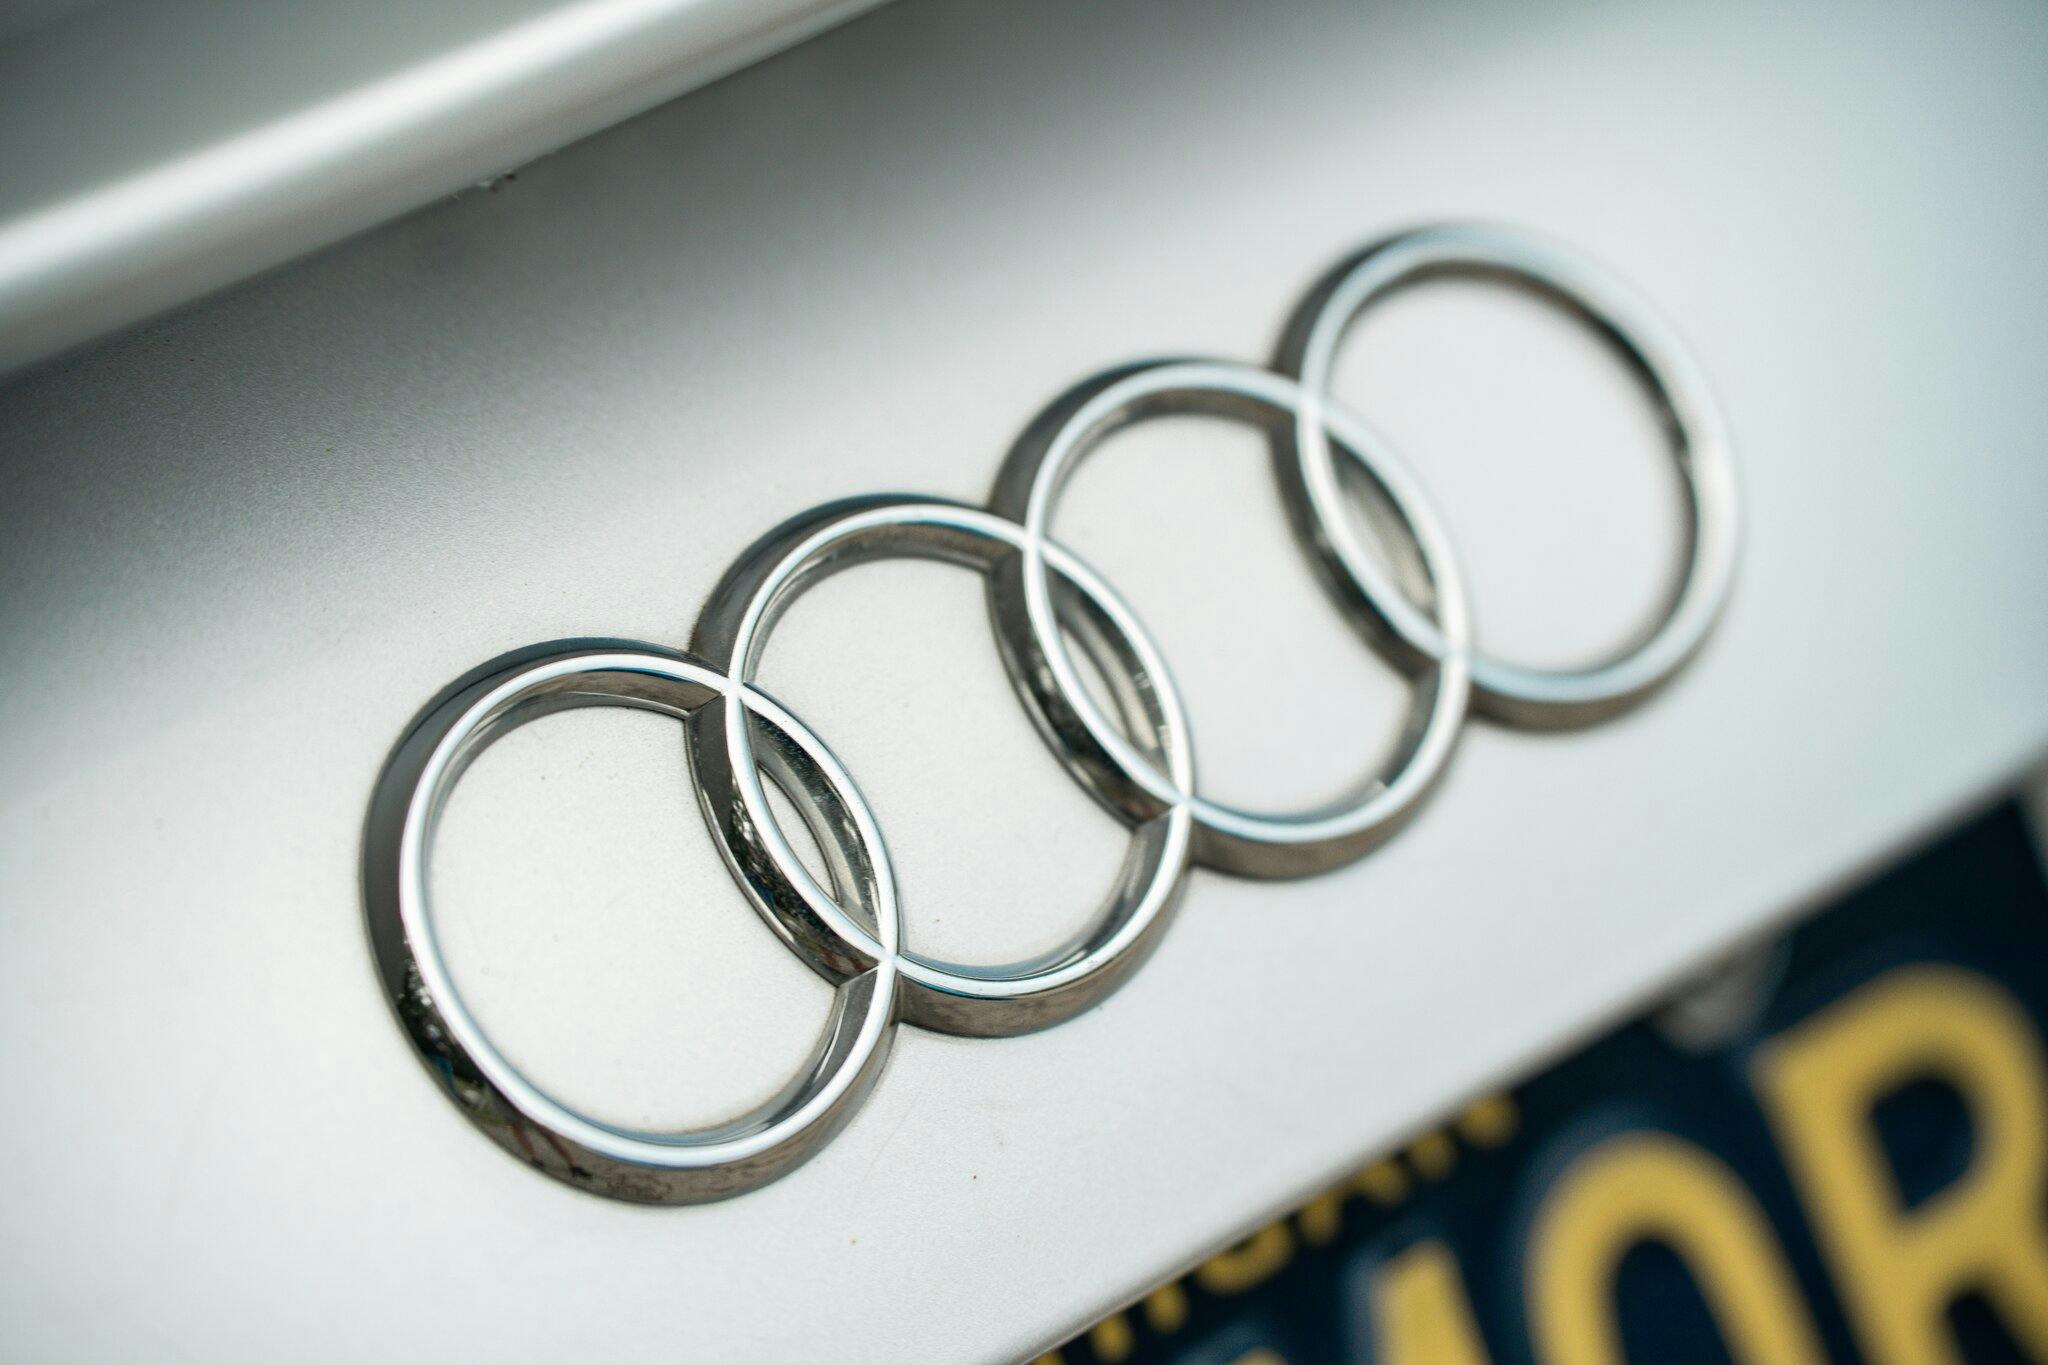 Audi TT MK1 Roadster badge rings